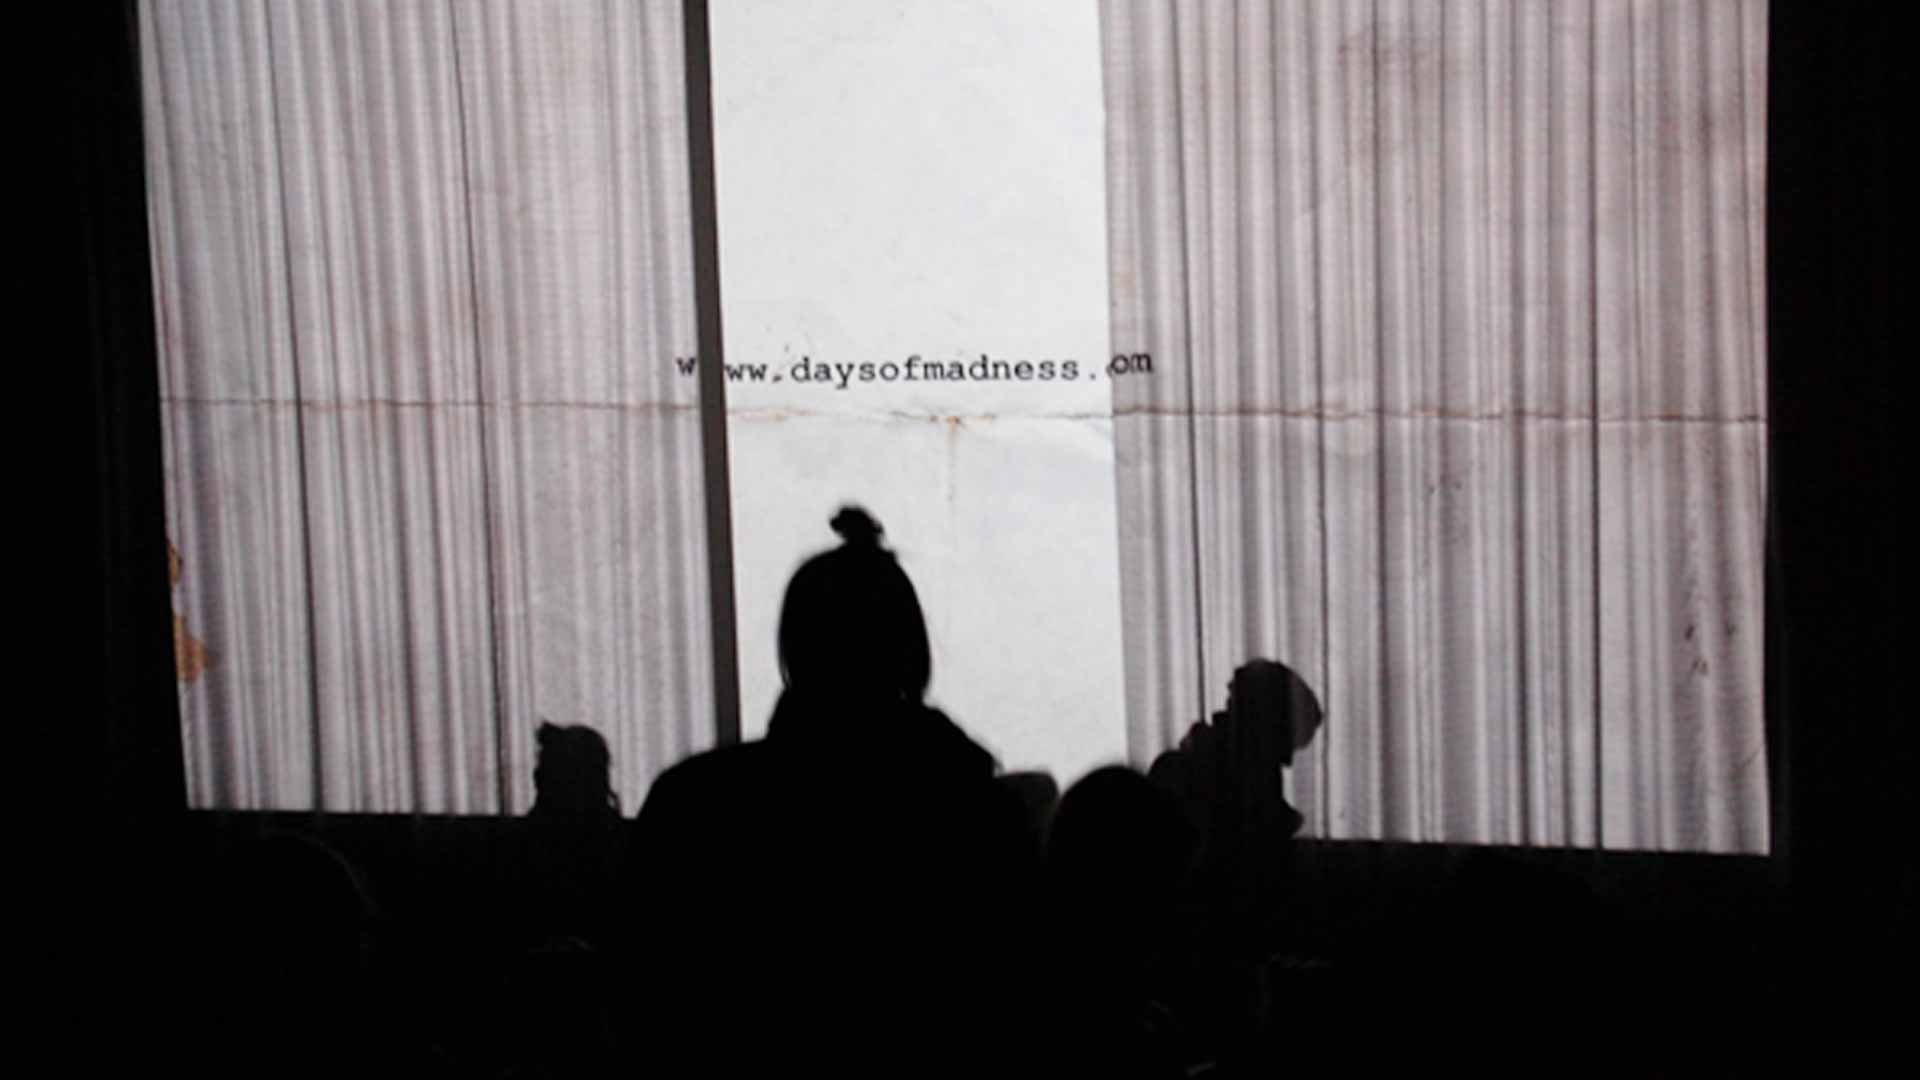 Foto: „Days of Madness“ von Damian Nenadic´, 61. internationale Leipziger Festival für Dokumentar- und Animationsfilm; © Juliane Kirsch